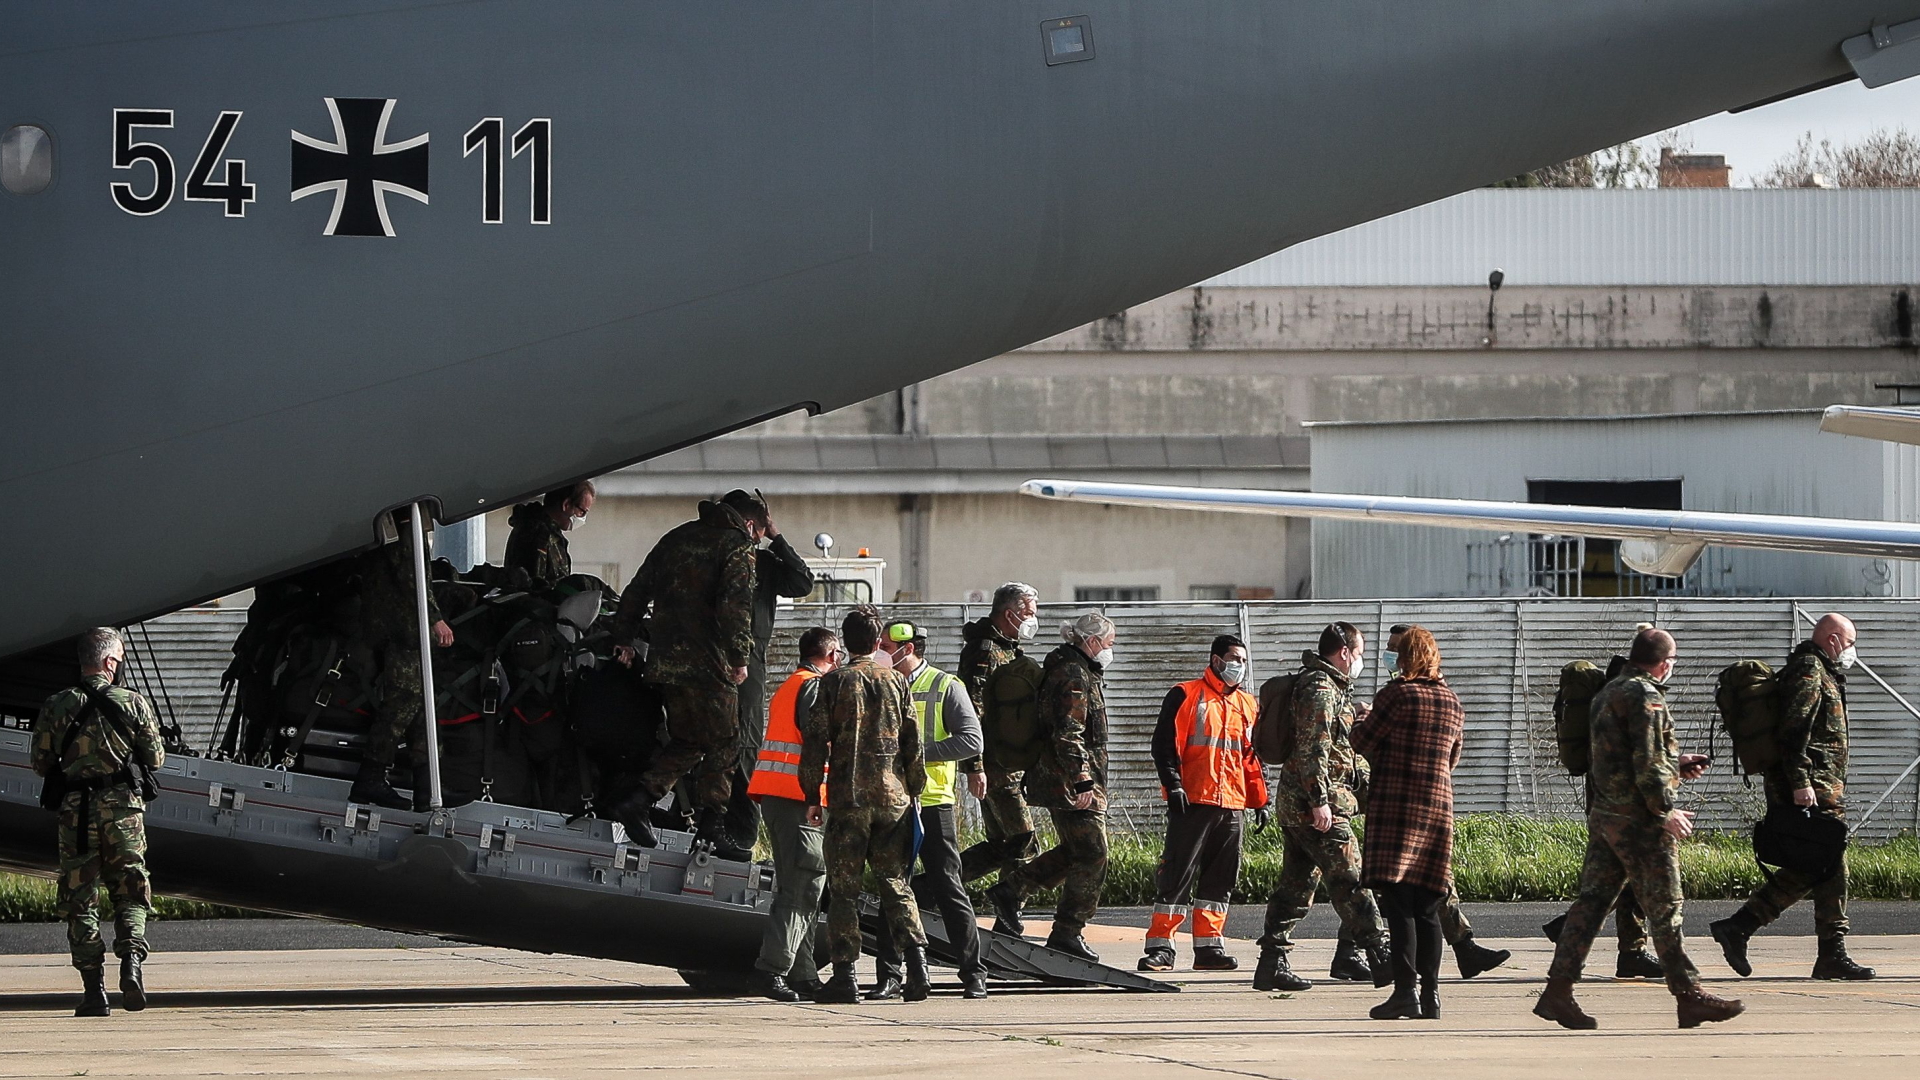 Ein Hilfsteam der Bundeswehr zur Bekämpfung der Corona-Pandemie in Portugal nach der Landung in Lissabon. | MARIO CRUZ/EPA-EFE/Shutterstock